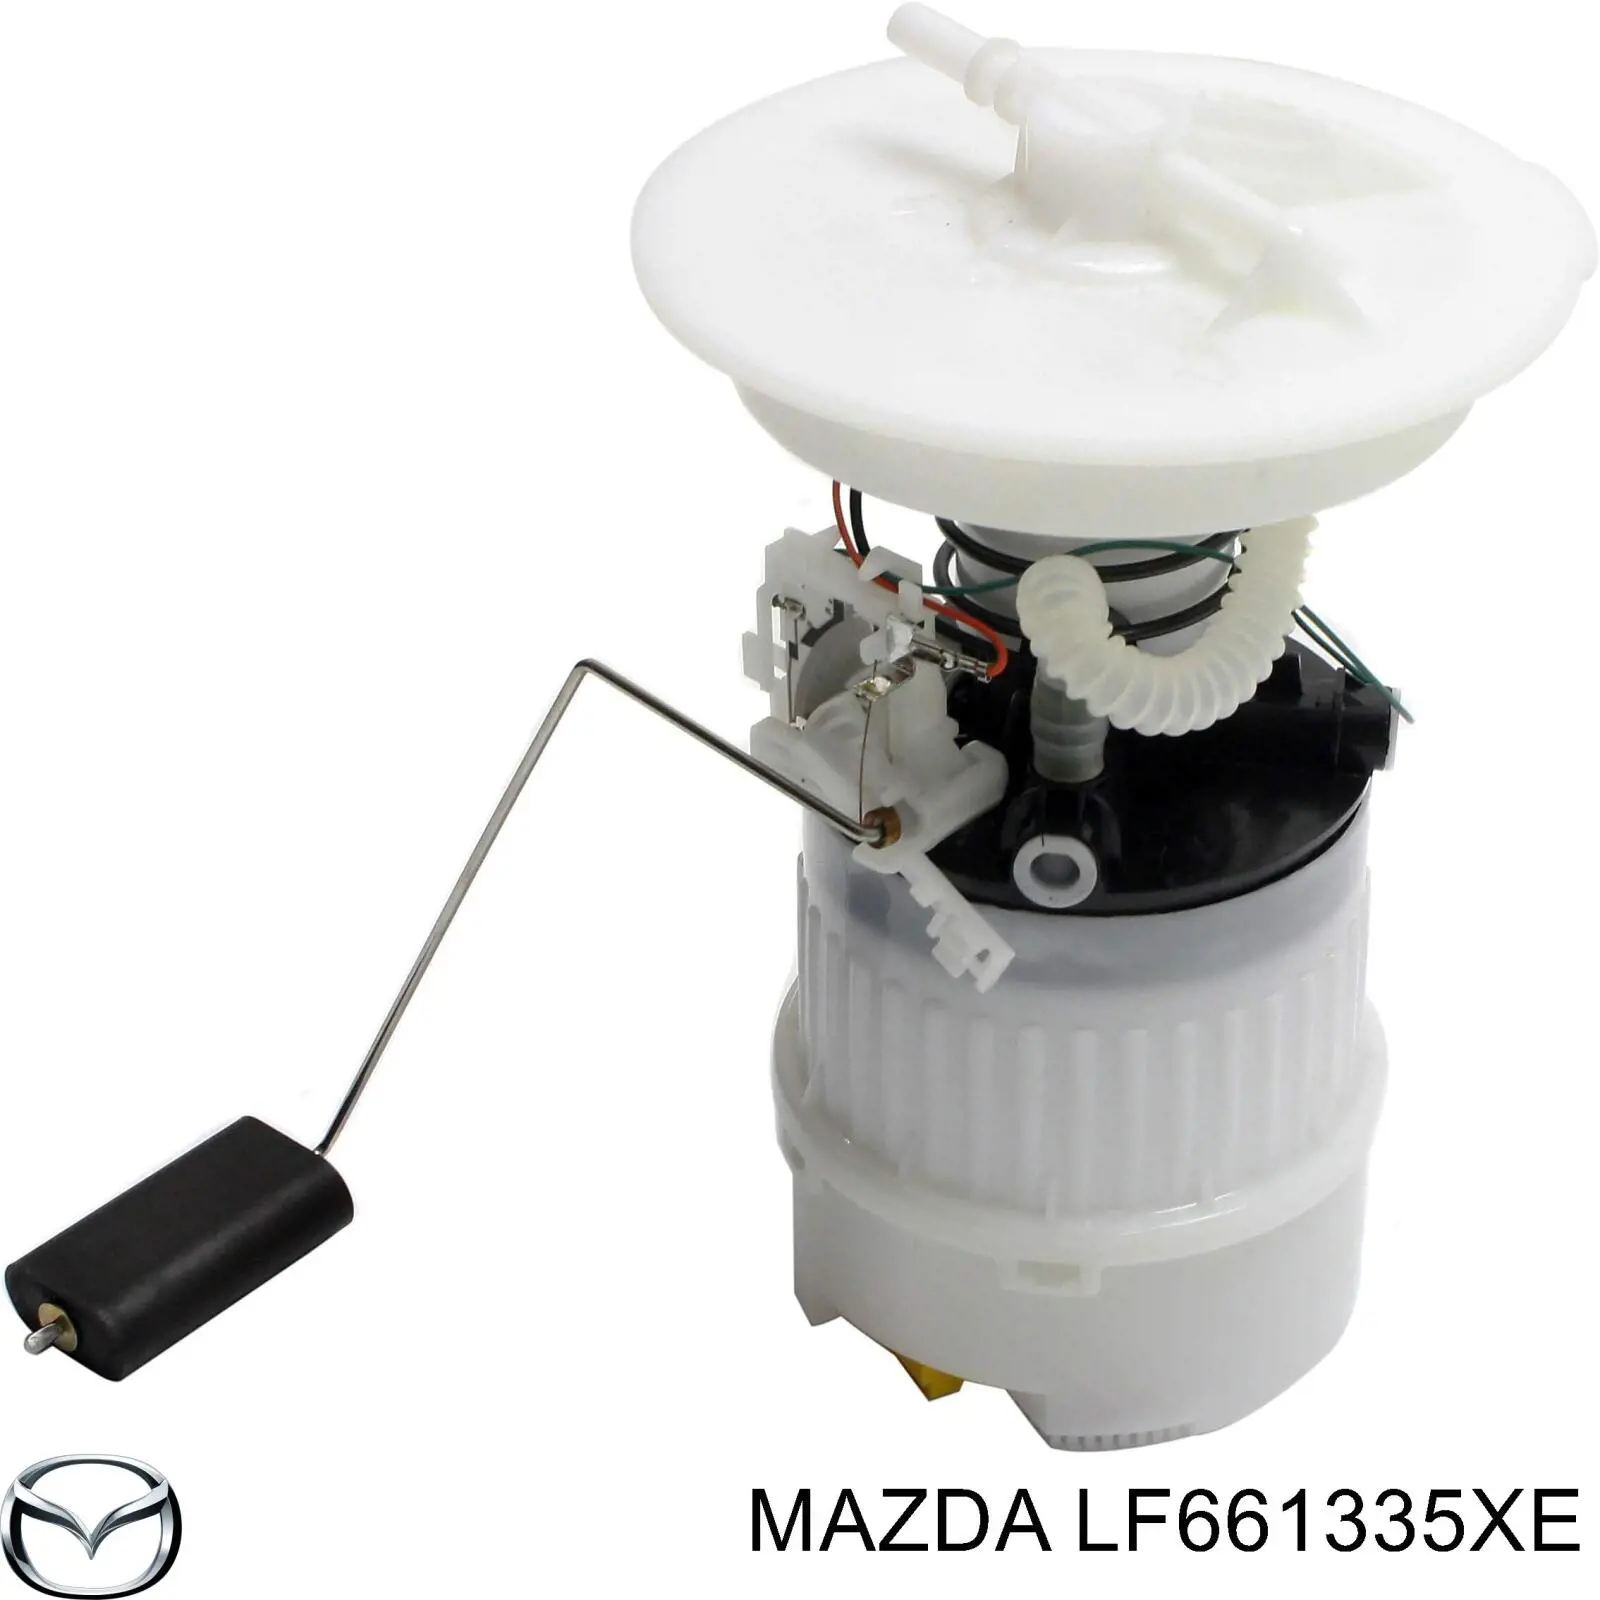 LF661335XE Mazda топливный насос электрический погружной